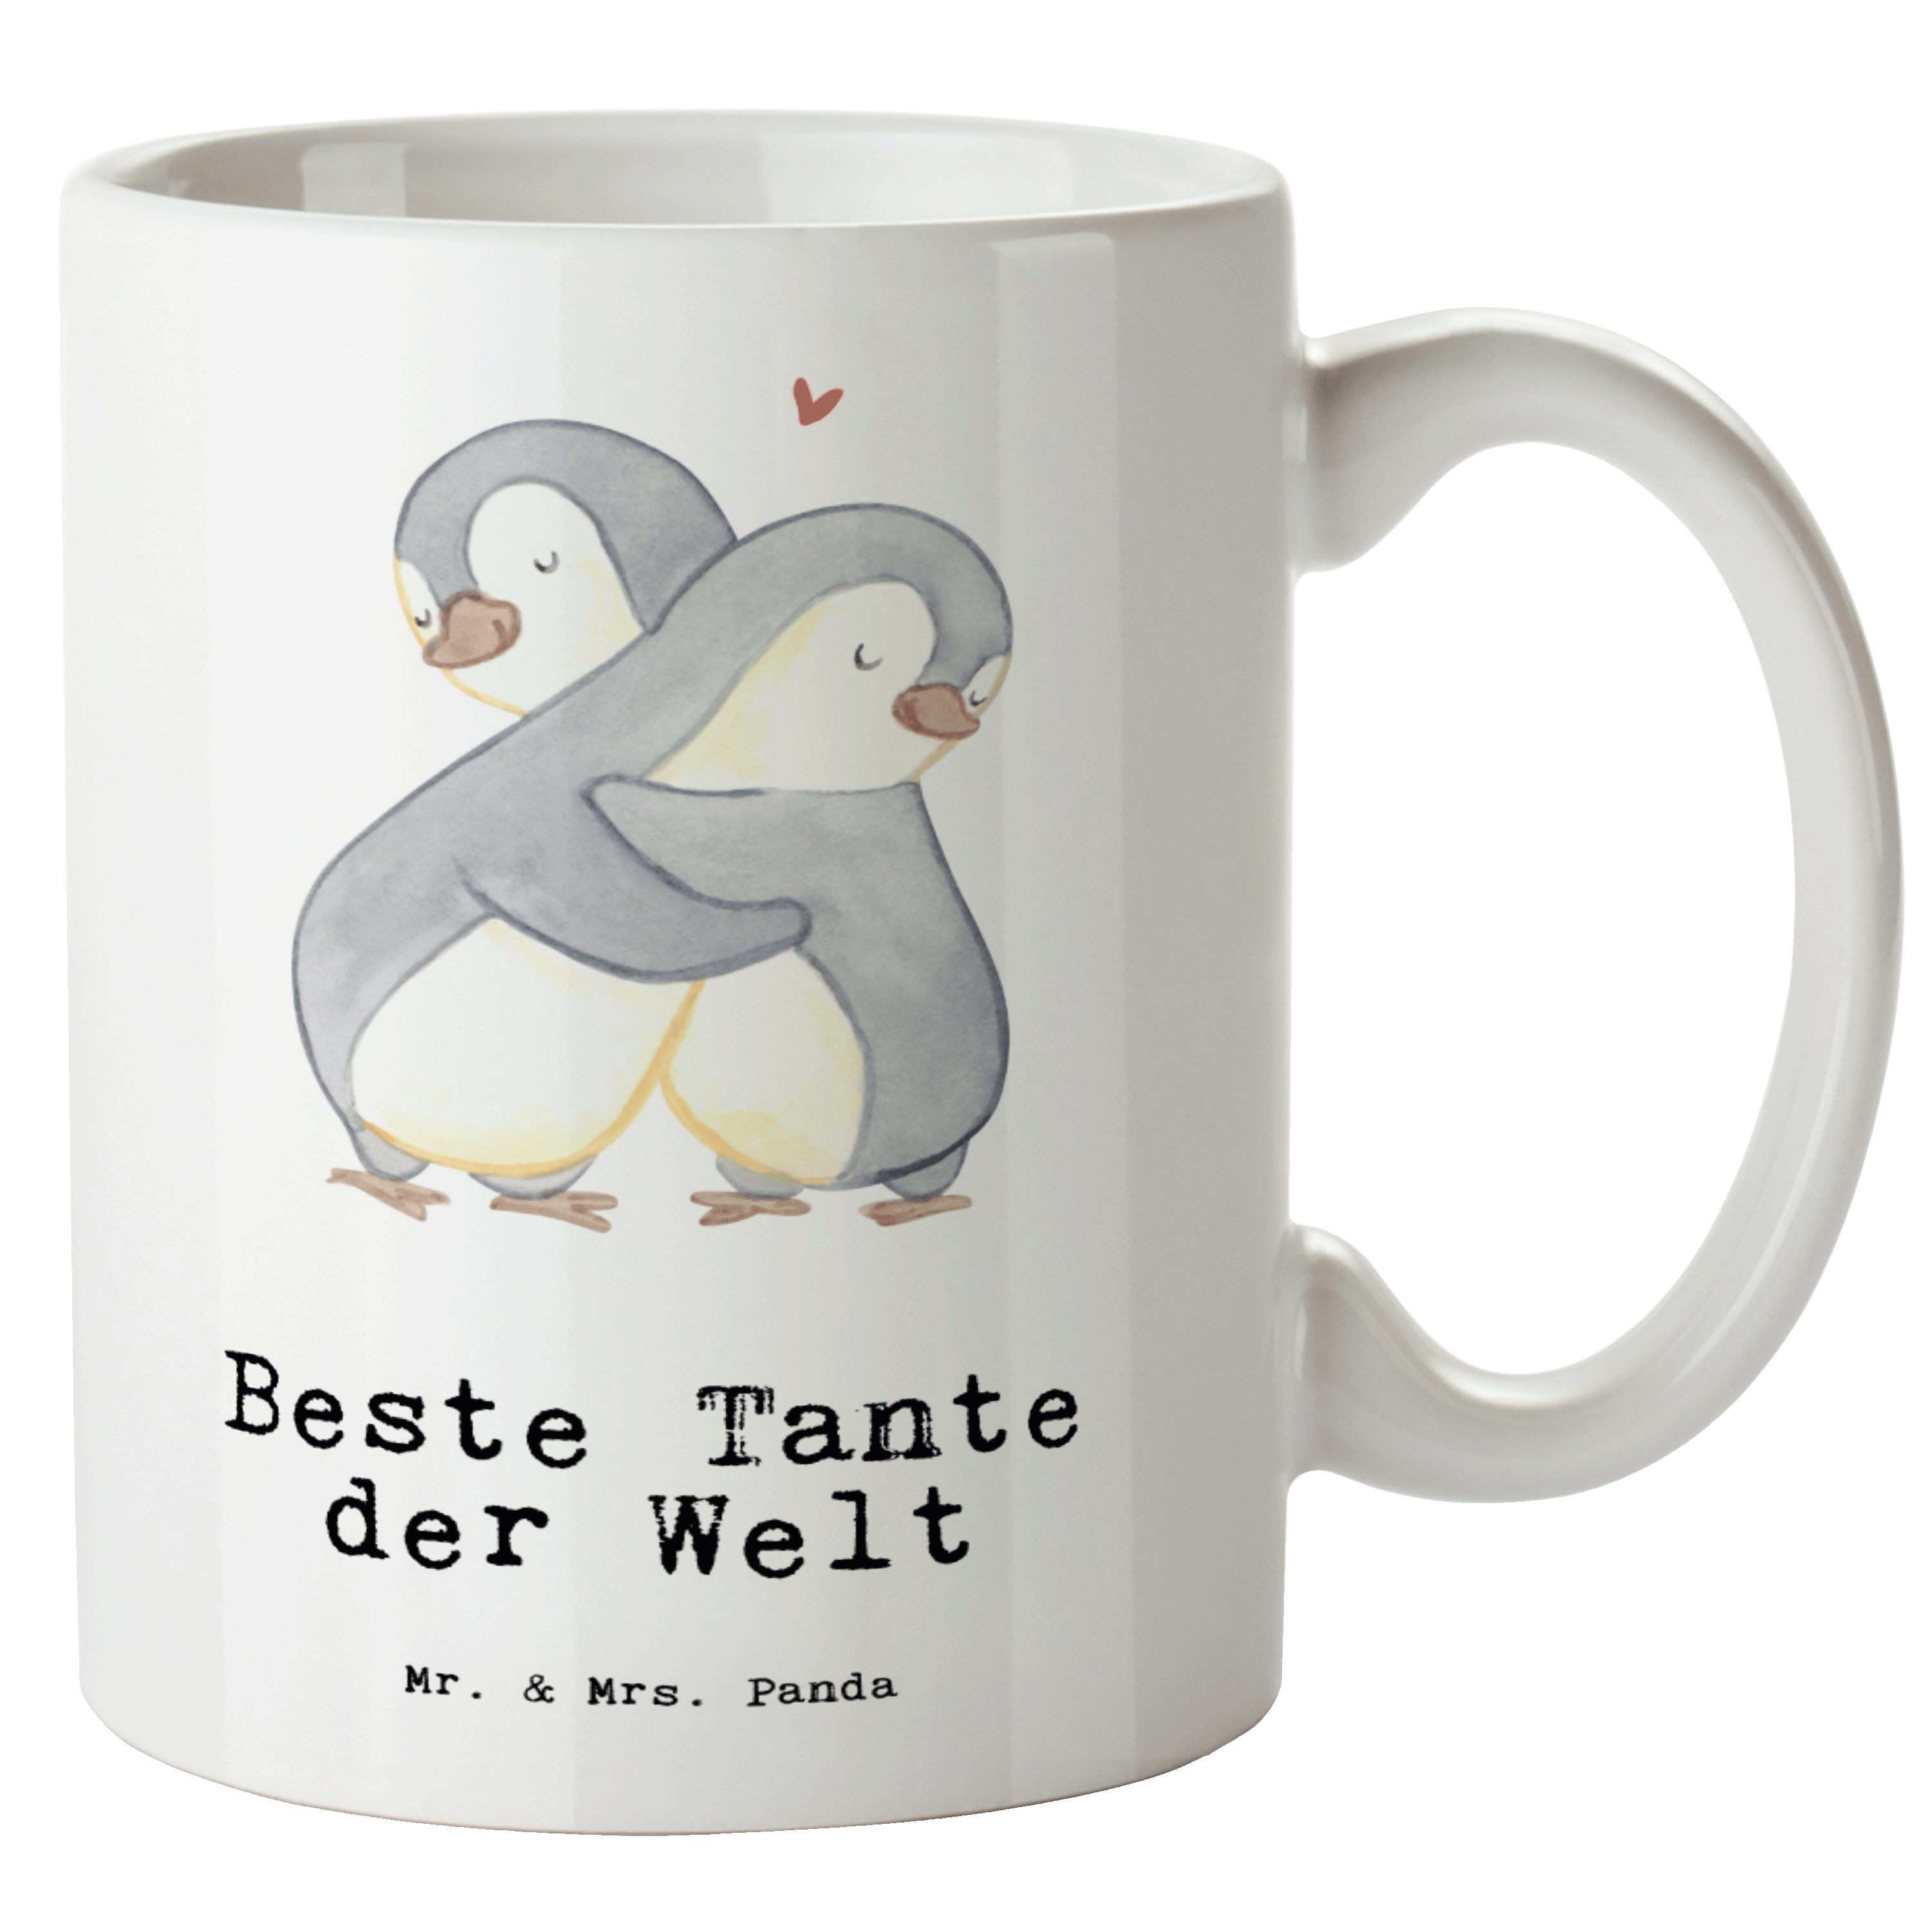 Mr. & Mrs. Panda Tasse Pinguin Beste Tante der Welt - Weiß - Geschenk, Groß, XL Teetasse, Kl, XL Tasse Keramik